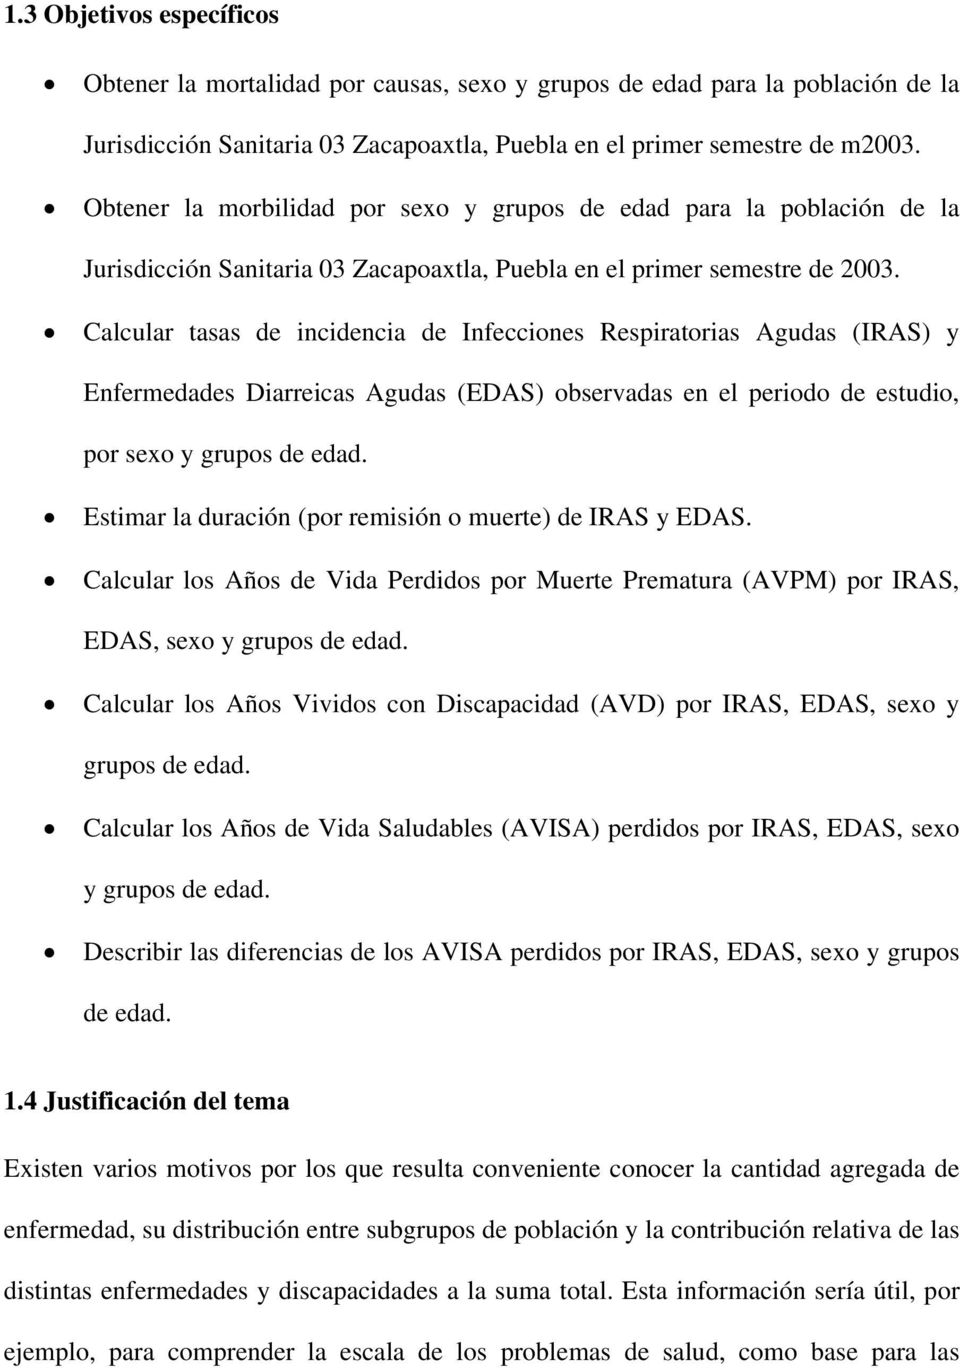 Calcular tasas de incidencia de Infecciones Respiratorias Agudas (IRAS) y Enfermedades Diarreicas Agudas (EDAS) observadas en el periodo de estudio, por sexo y grupos de edad.